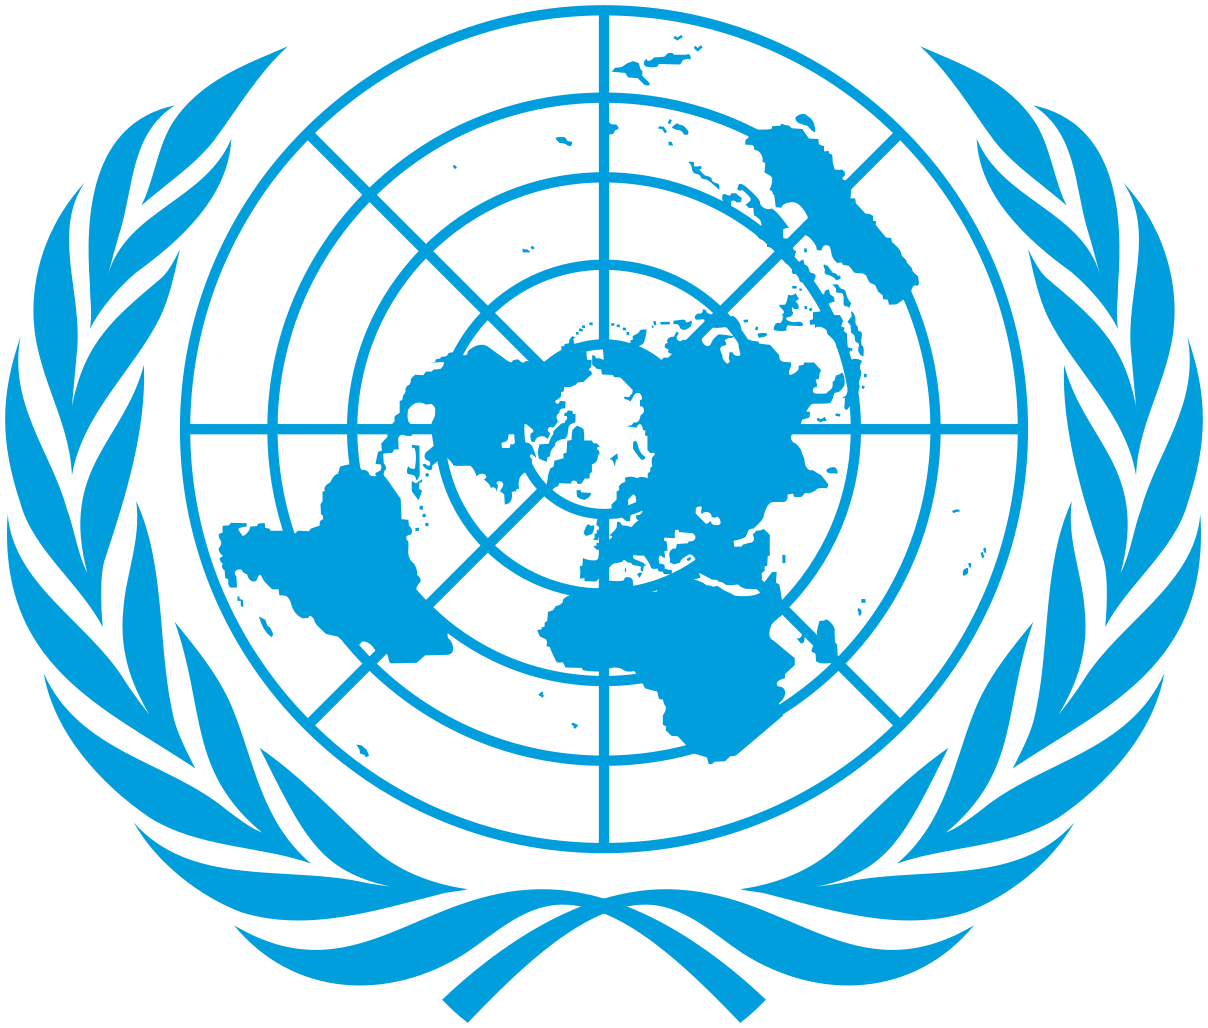 File:UN emblem blue.svg - Wikimedia Commons